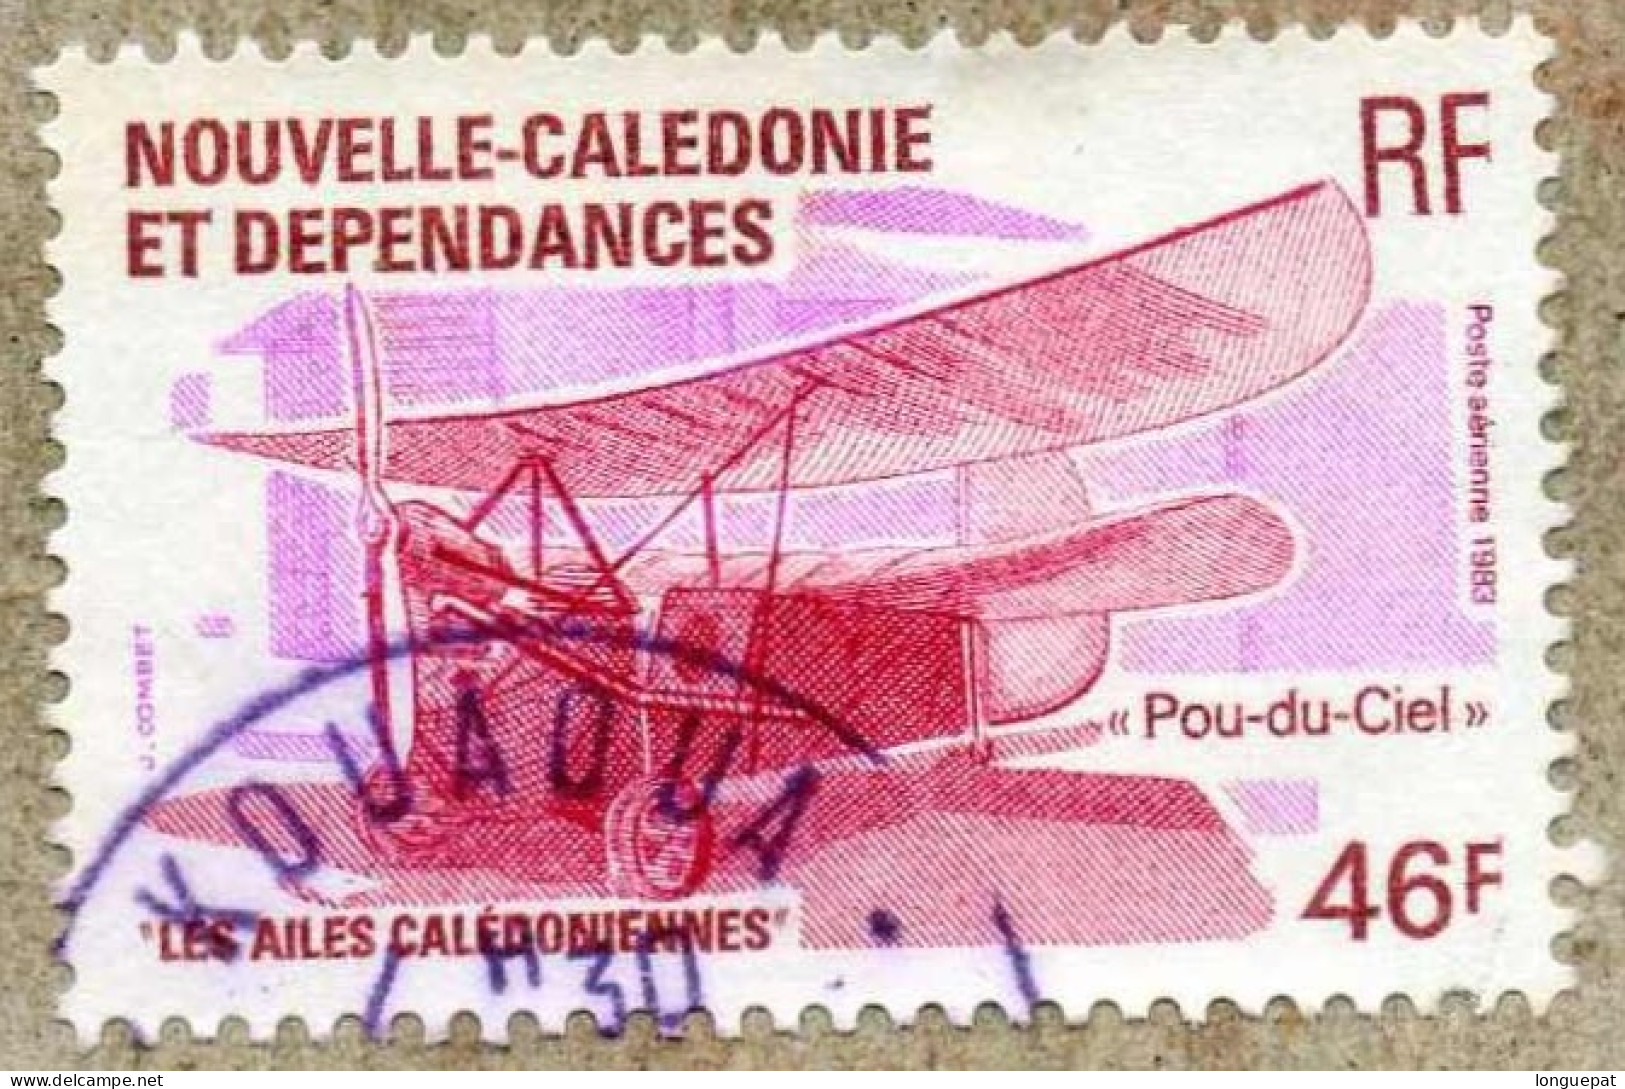 Nelle CALEDONIE : Aviation - Ailes Calédoniennes : "Pou-du-Ciel" - Avions - Transport - - Used Stamps